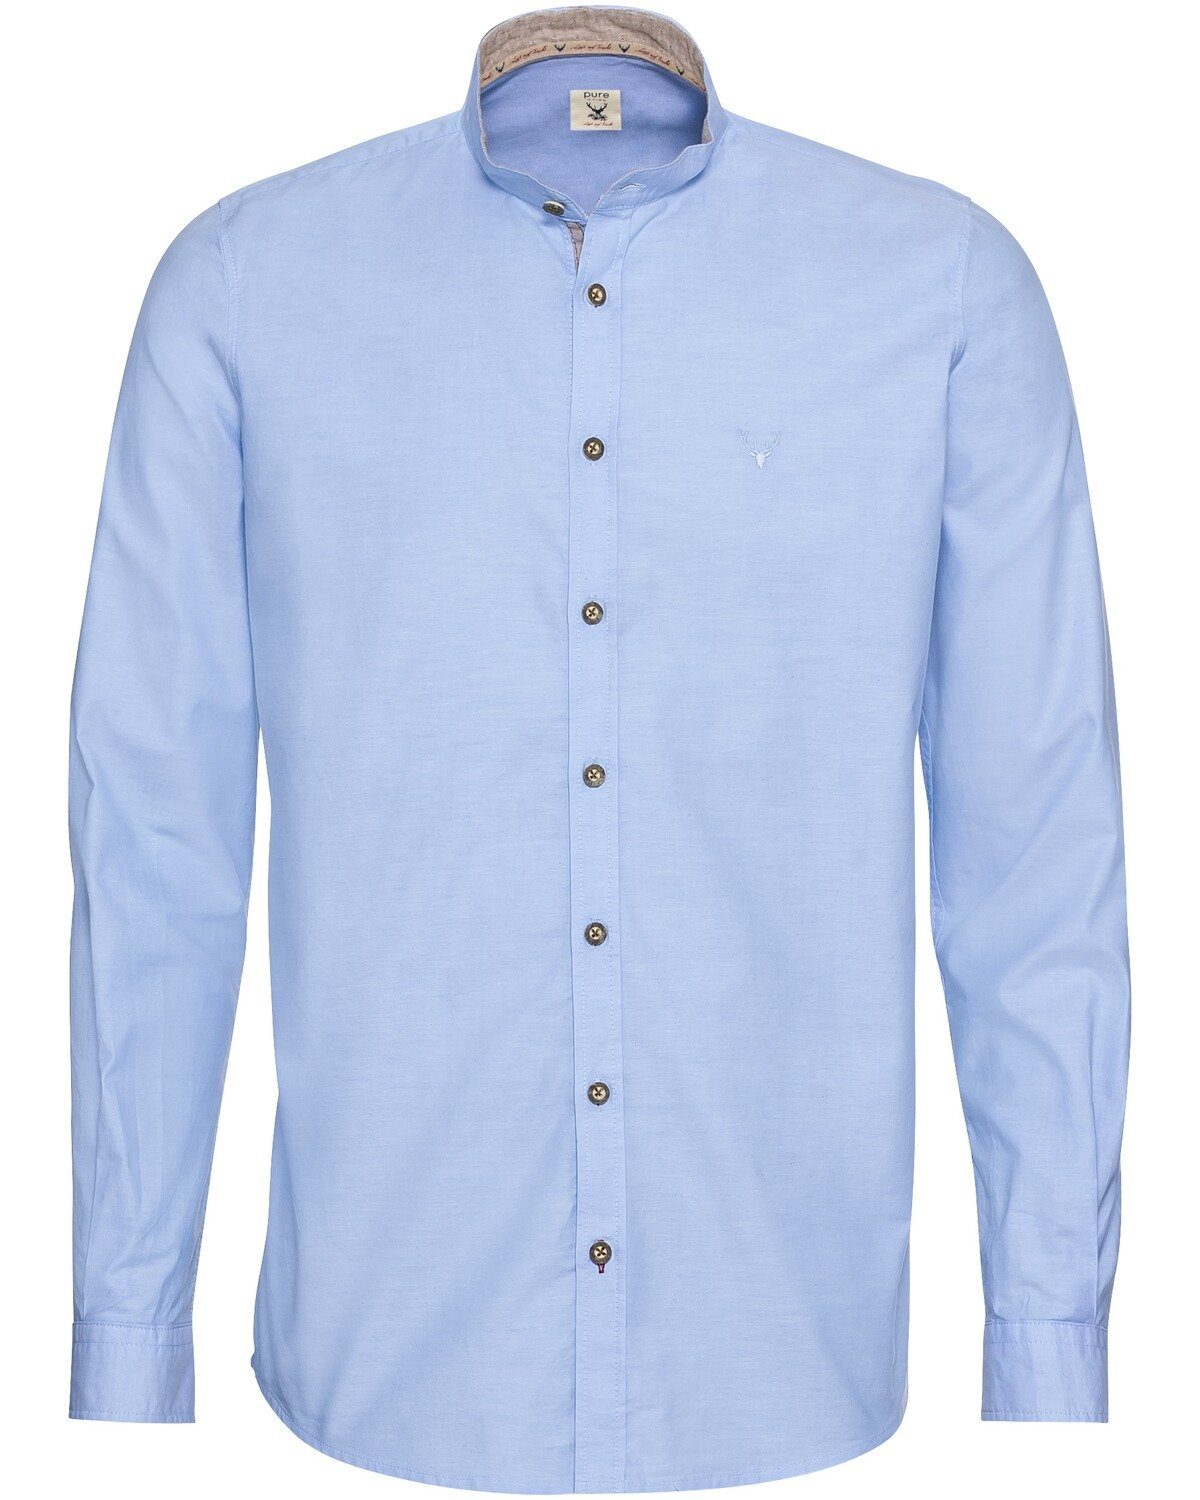 Pure Hellblau Stehkragen Trachtenhemd Oxfordhemd mit